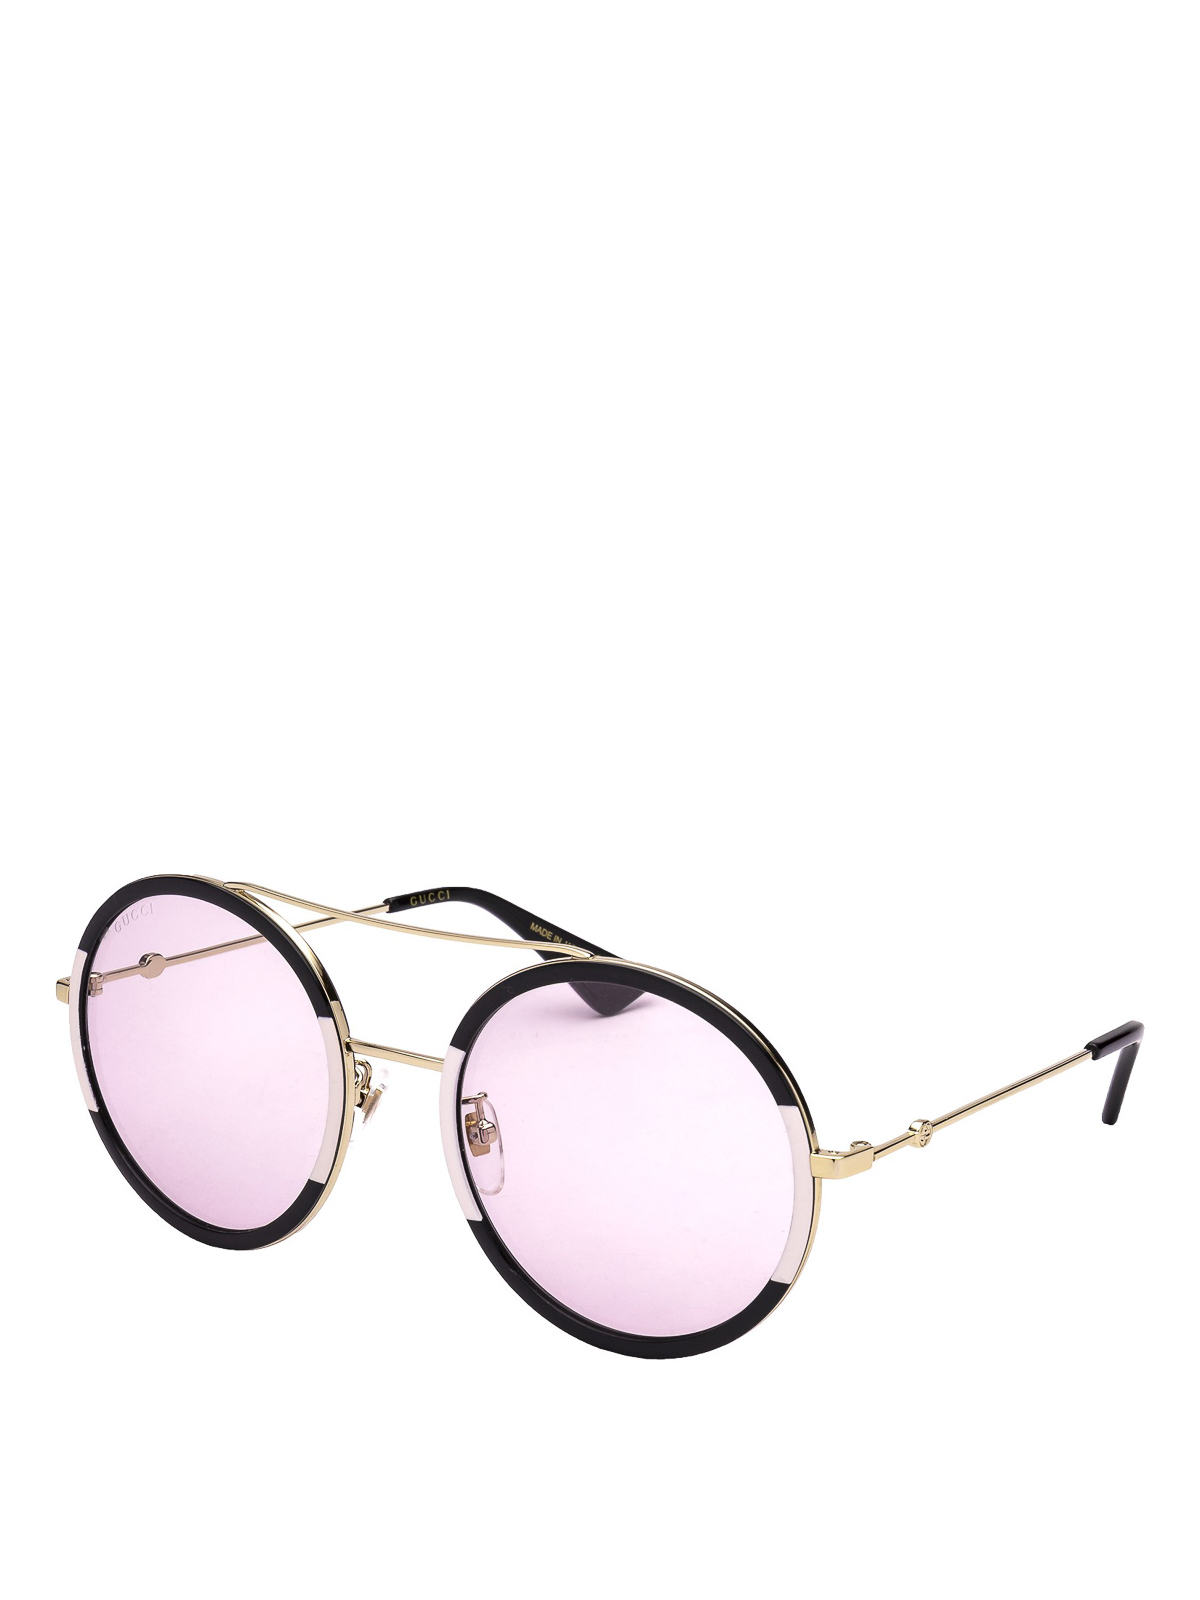 Gucci - Round two-tone sunglasses 